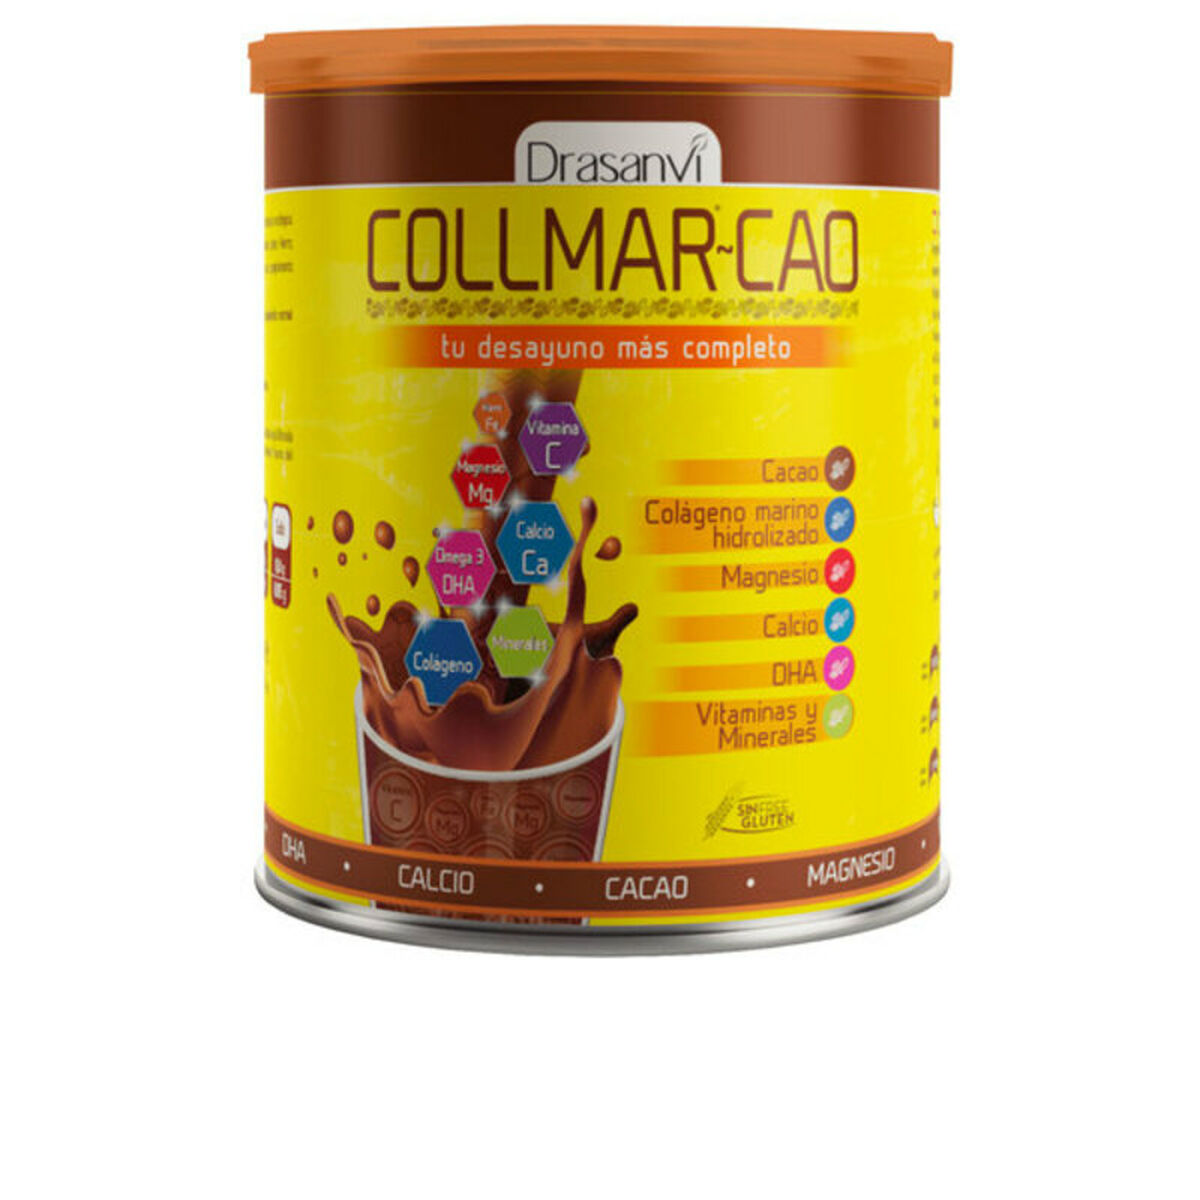 Cocoa Collmar-Cao Drasanvi Collmar Cao (300 g)